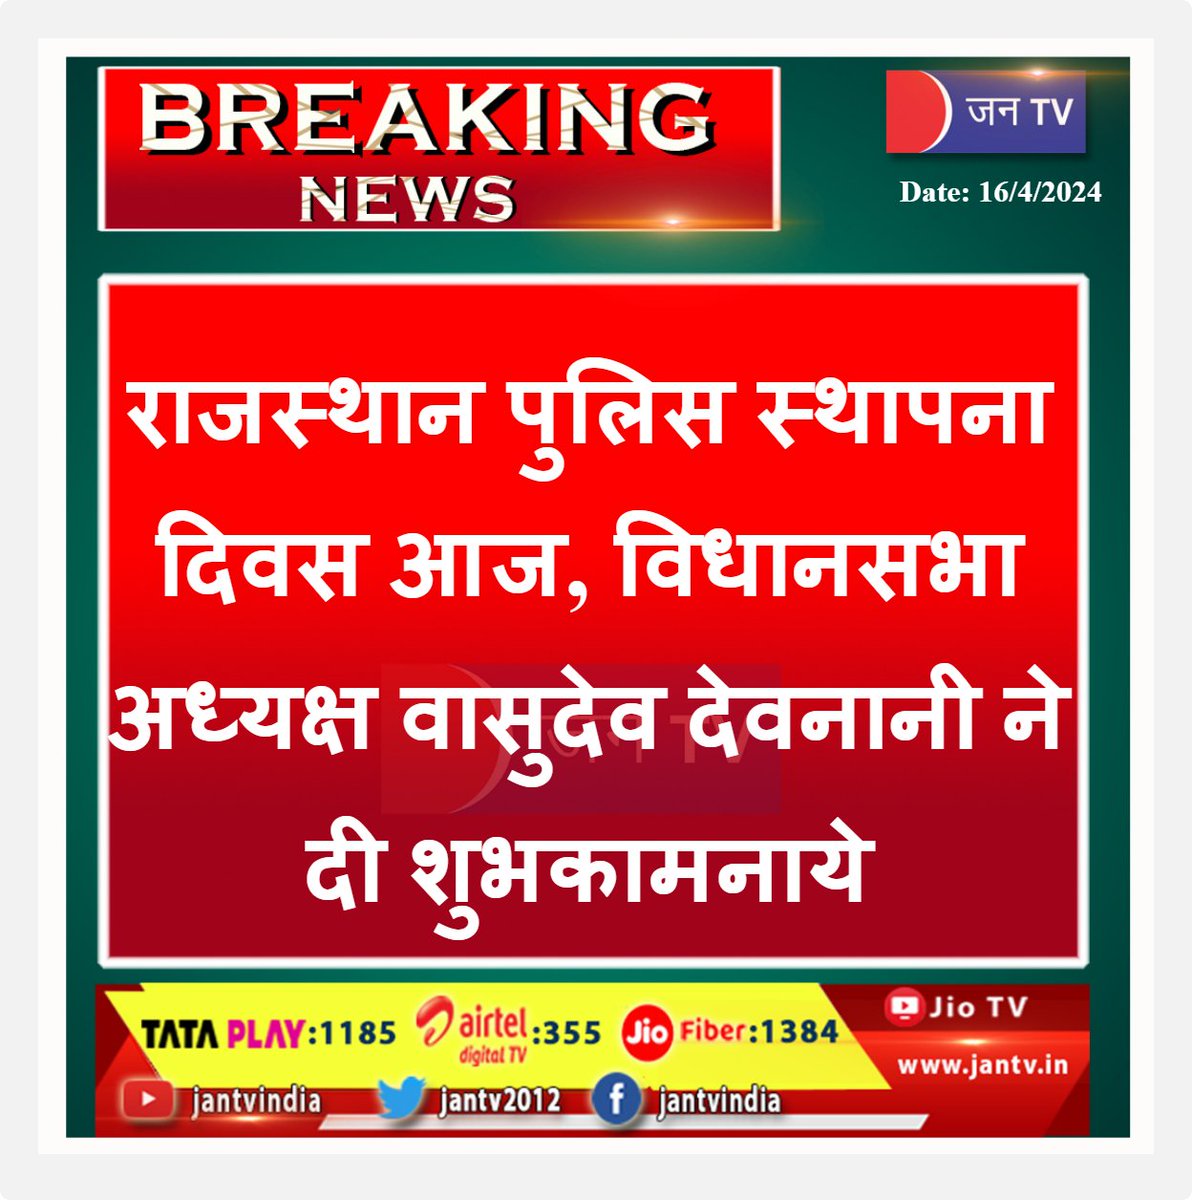 #breakingnews #LatestNews #RajasthanPolice #foundationday #politicalnews #police_flag_day #vasudevdevnani #jantv_adhikari @VasudevDevnani @PMOIndia @narendramodi